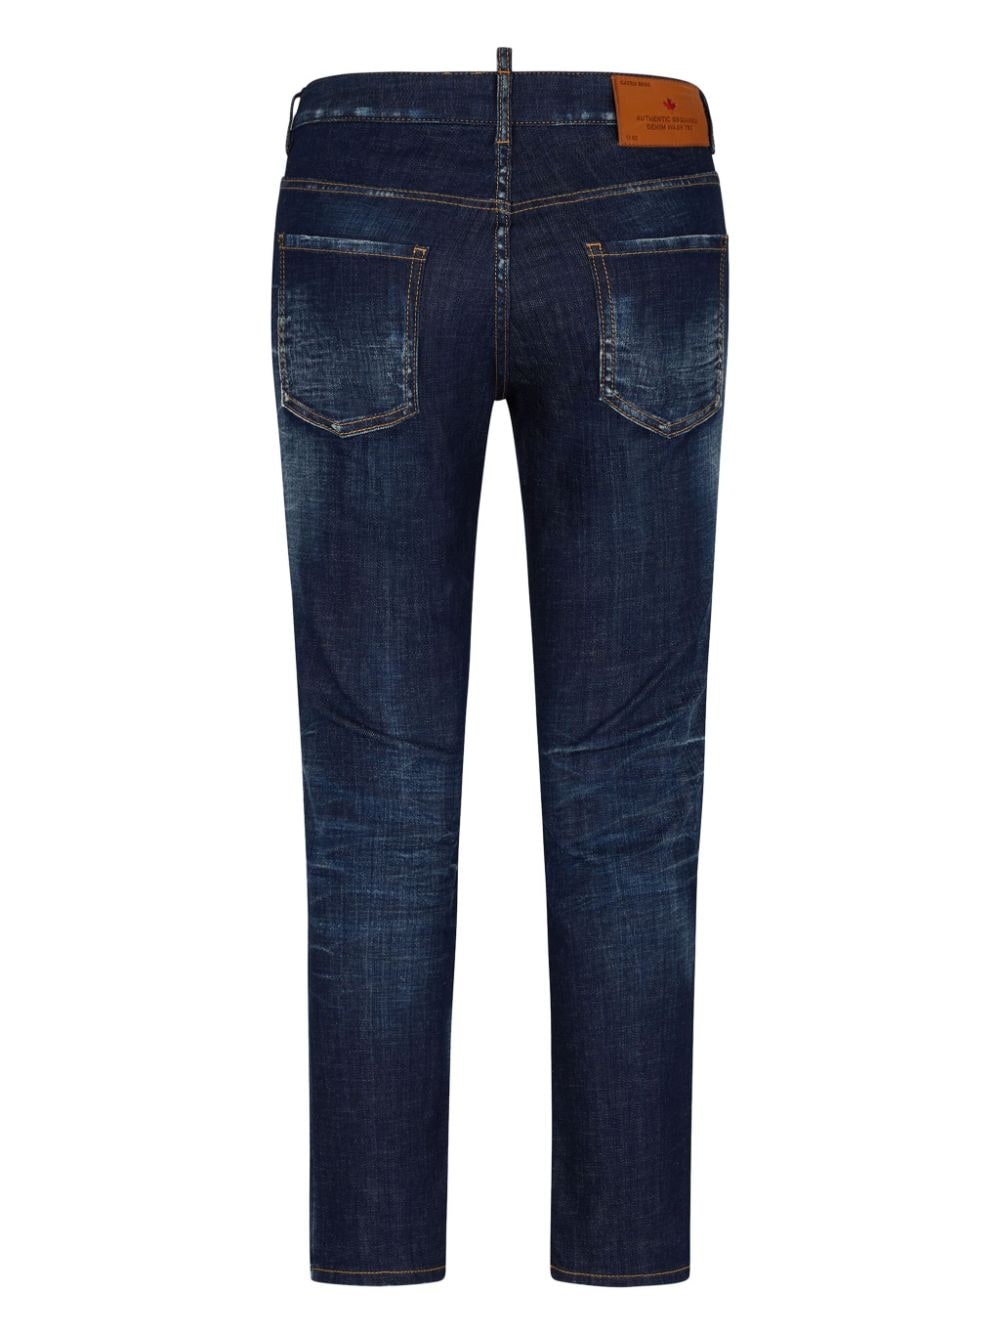 Jeans effetto baffuto dalla vestibilità slim<br>